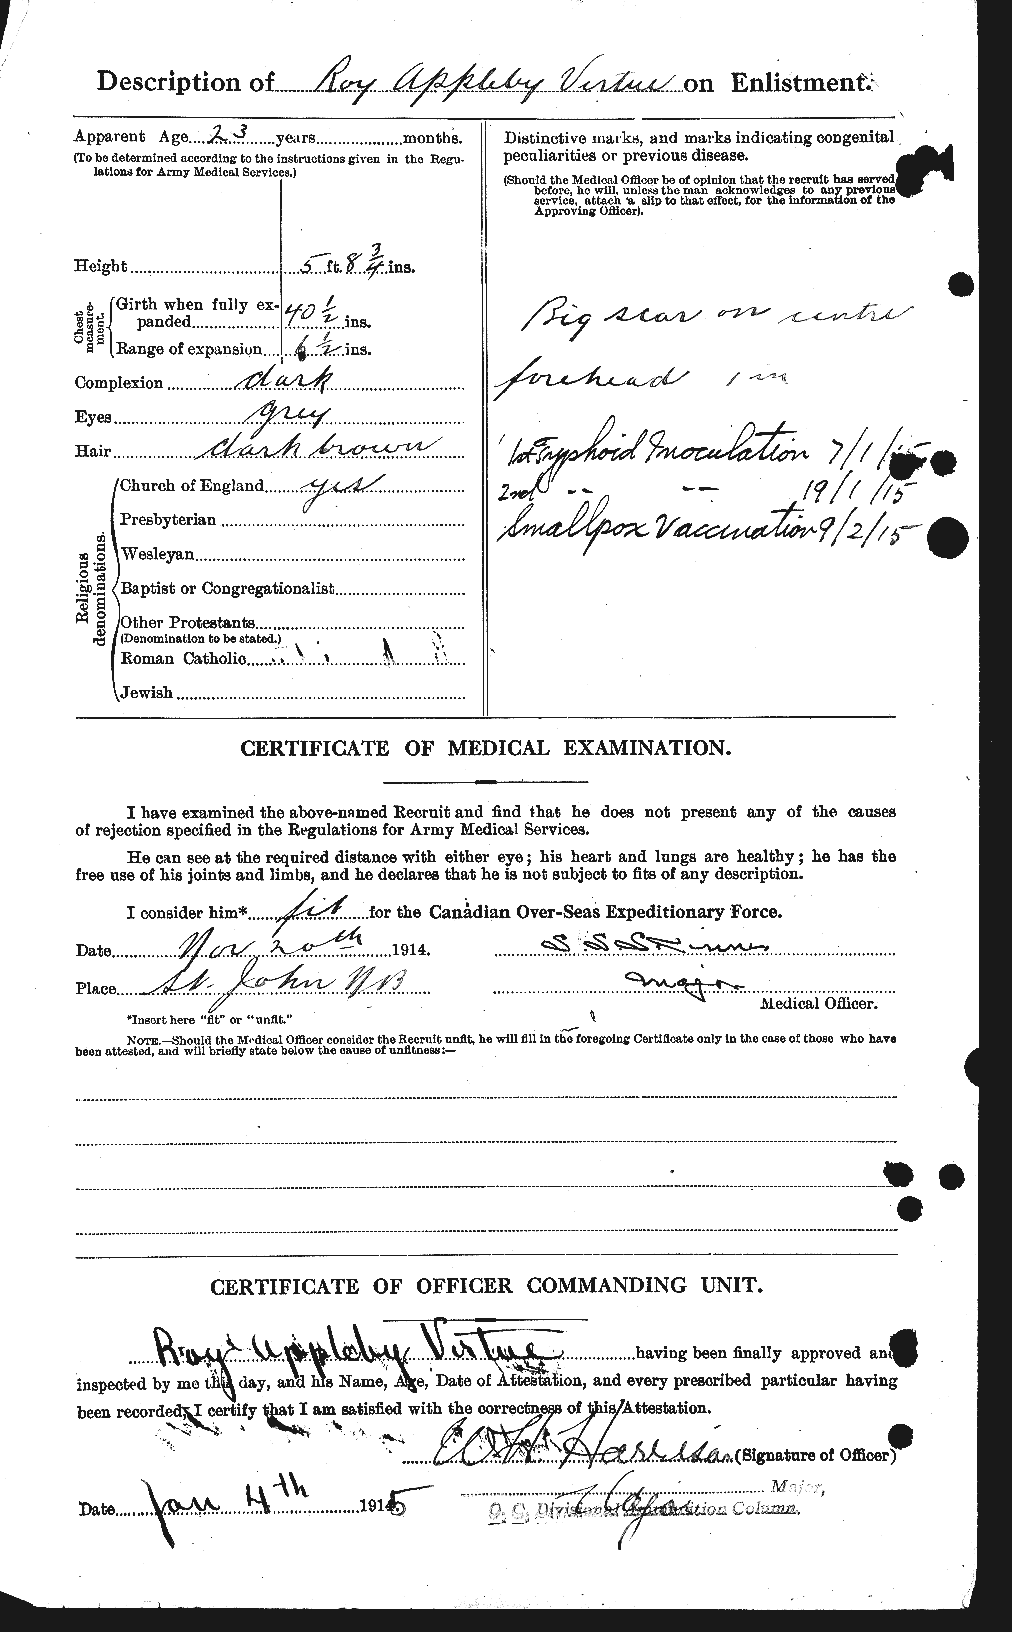 Dossiers du Personnel de la Première Guerre mondiale - CEC 650417b